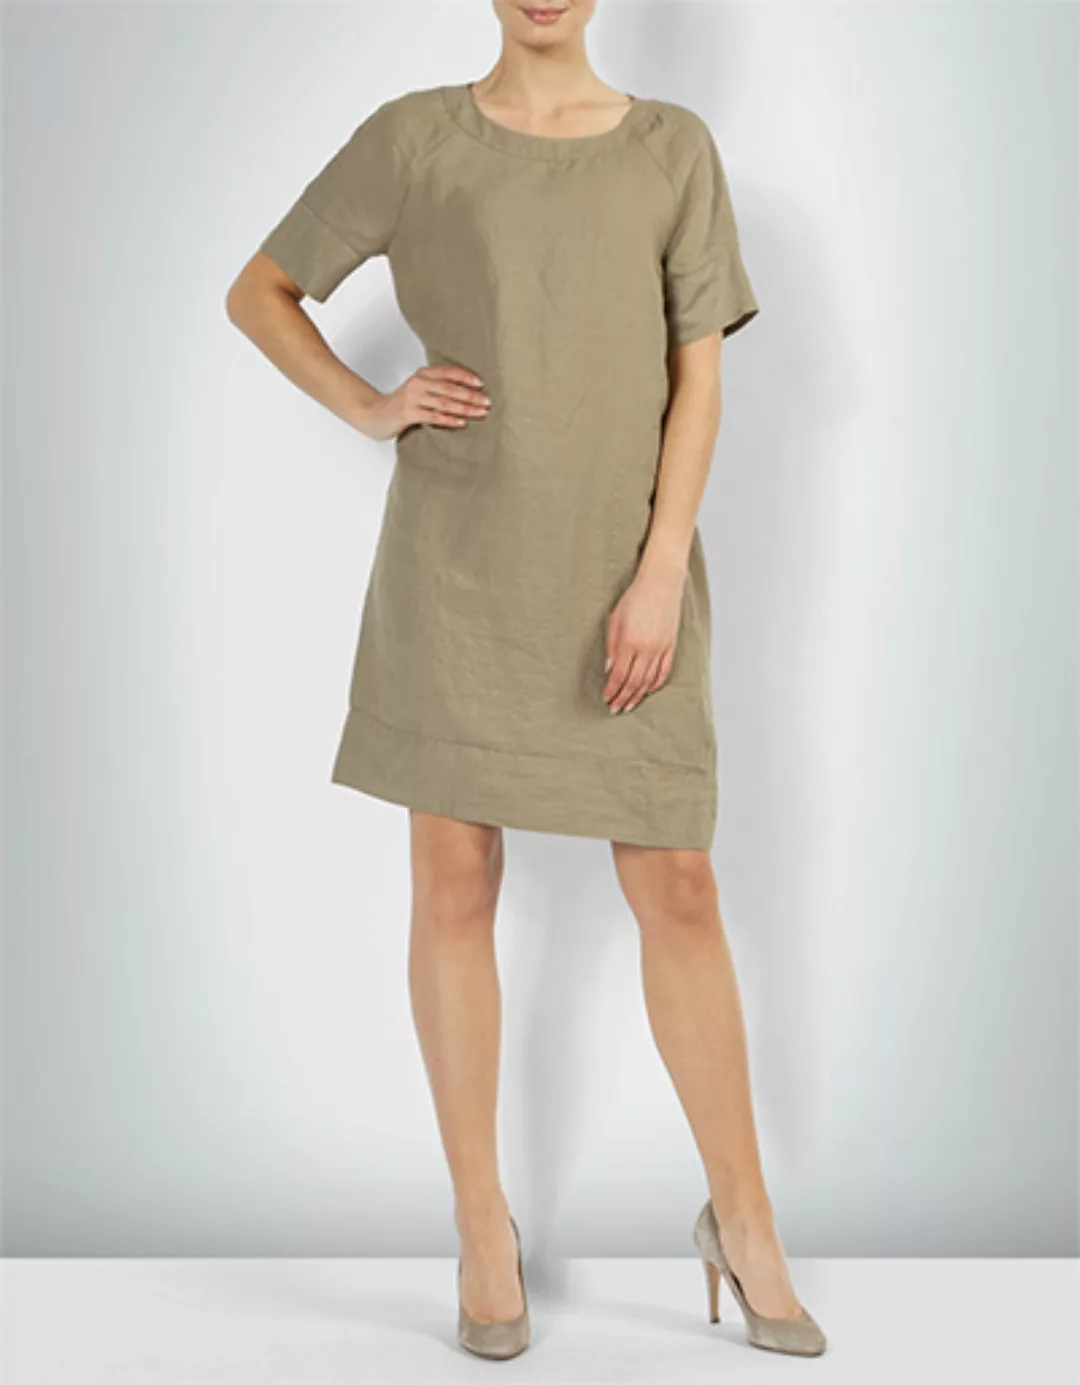 Marc O'Polo Damen Kleid 804 0919 21025/430 günstig online kaufen